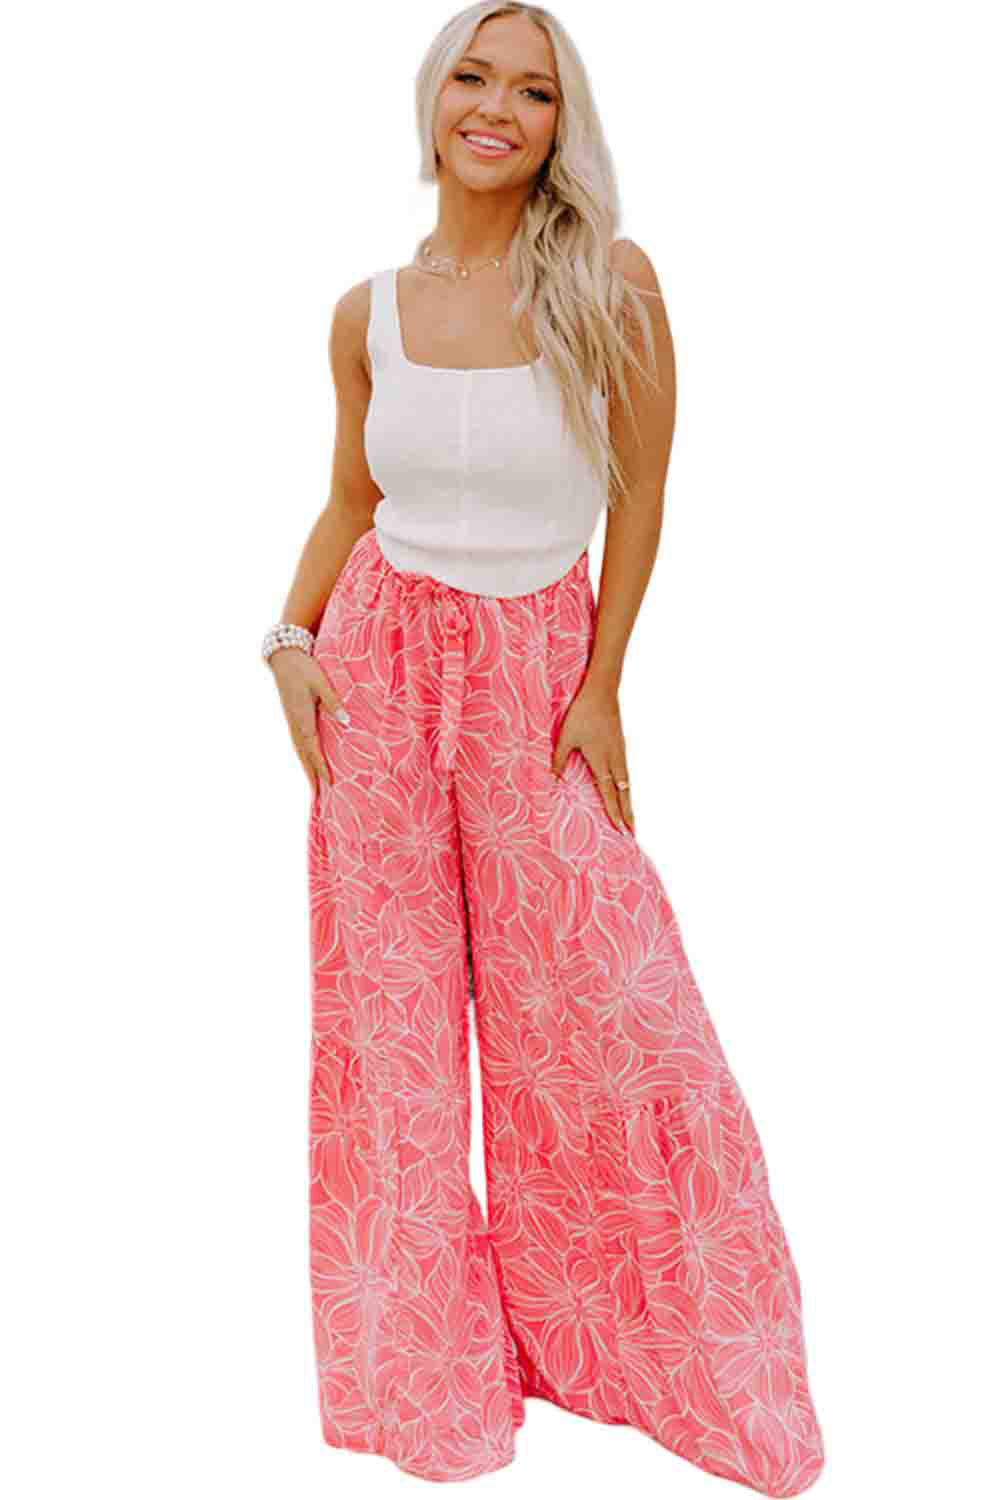 Pink Bohemian Floral Print Wide Leg Pants Bottoms JT's Designer Fashion